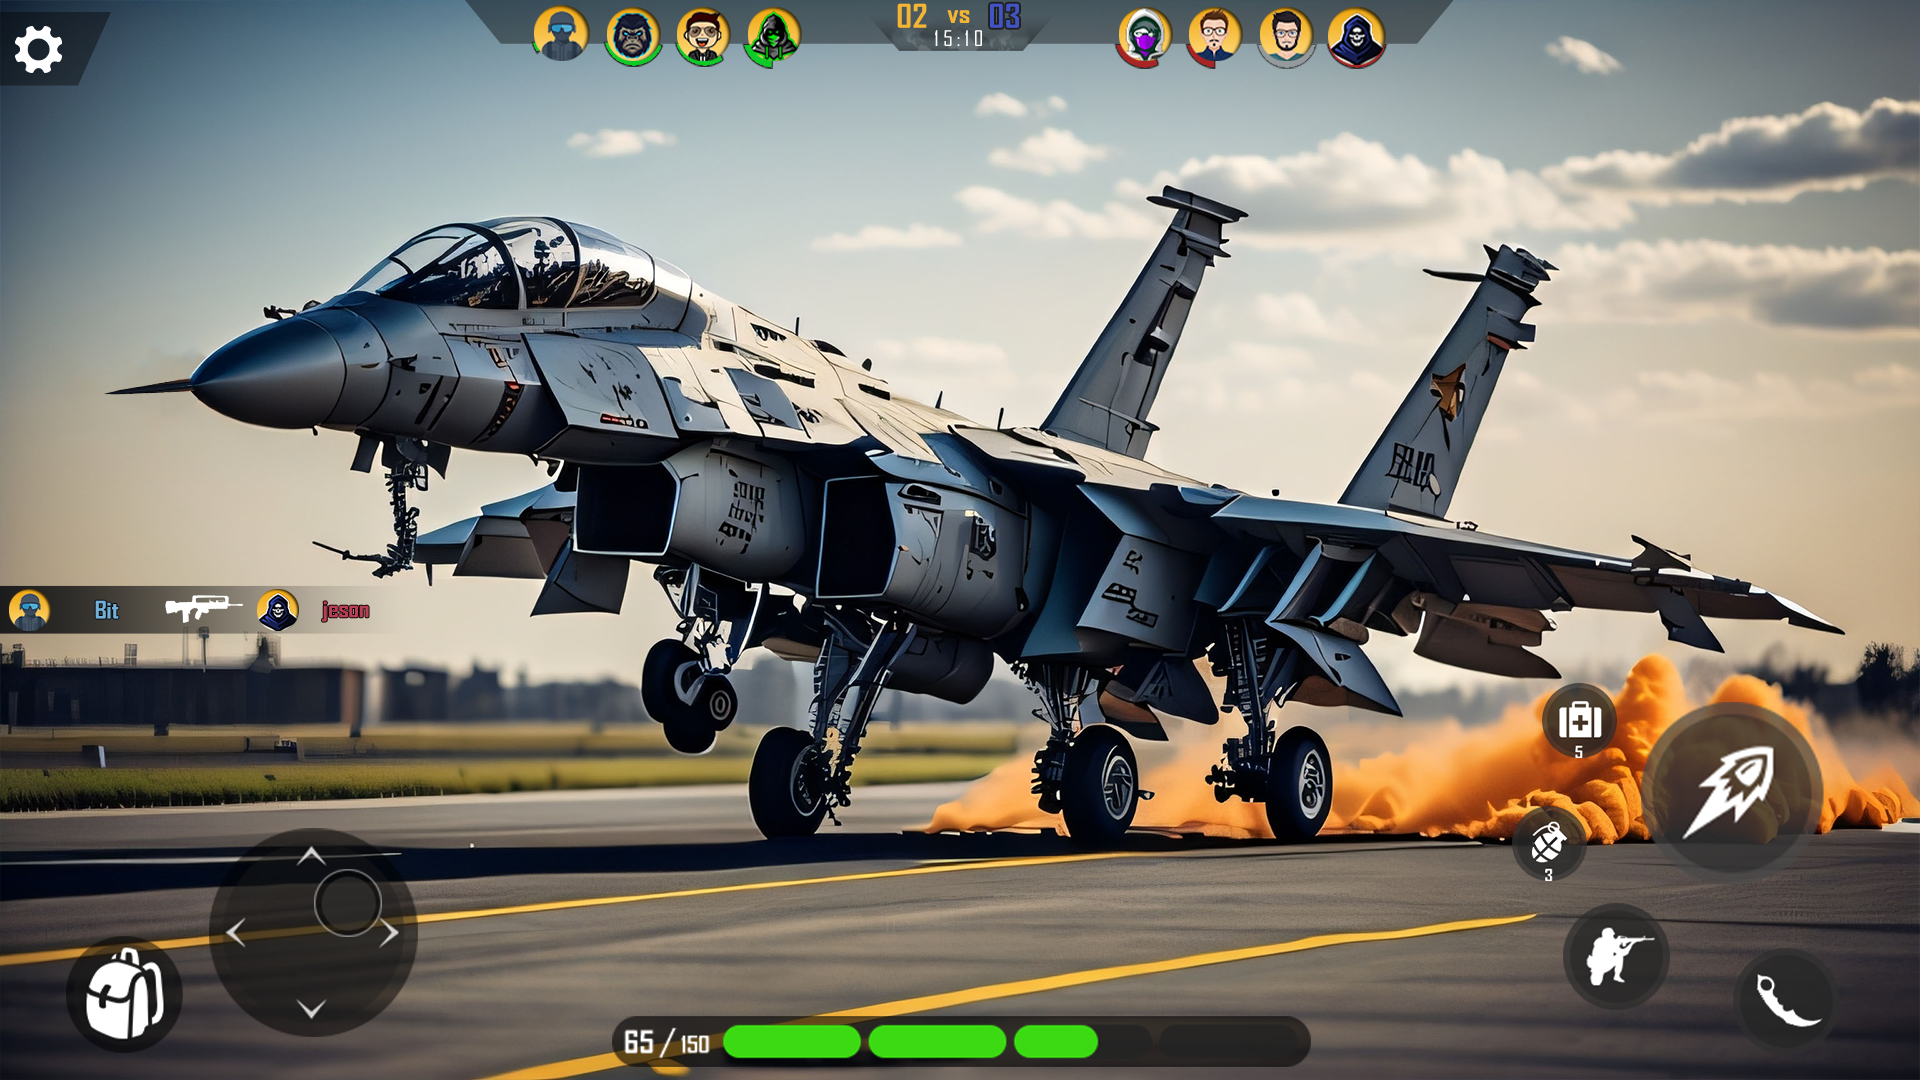 Screenshot 1 of Modern Jet Fighter Games 1.3.0